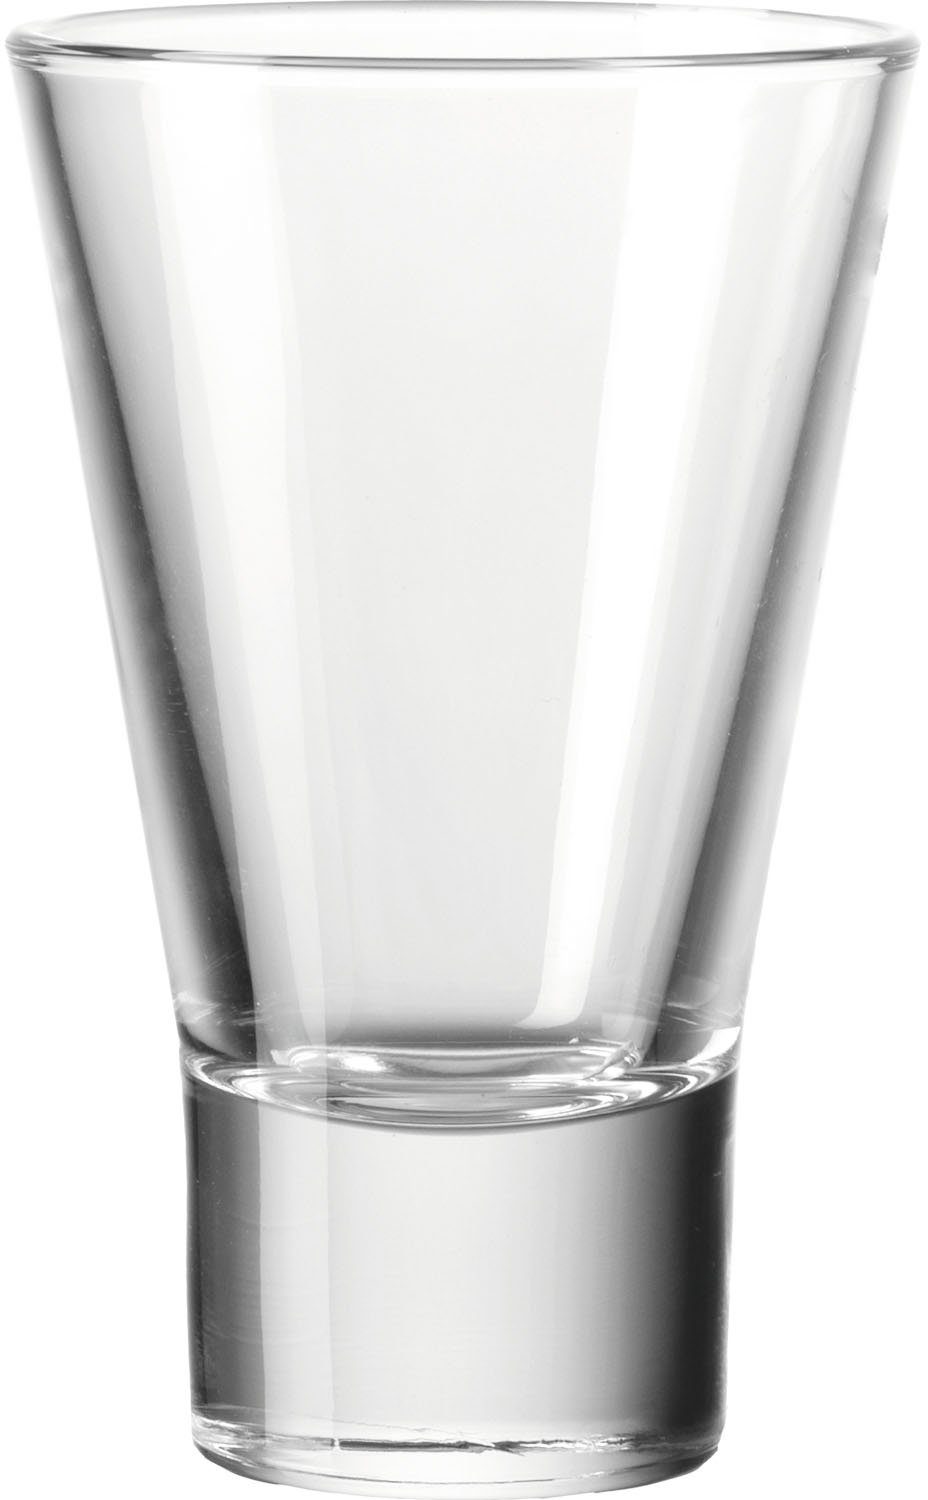 LEONARDO Gläser-Set Becher GILLI, Glas, 140 ml, 12-teilig